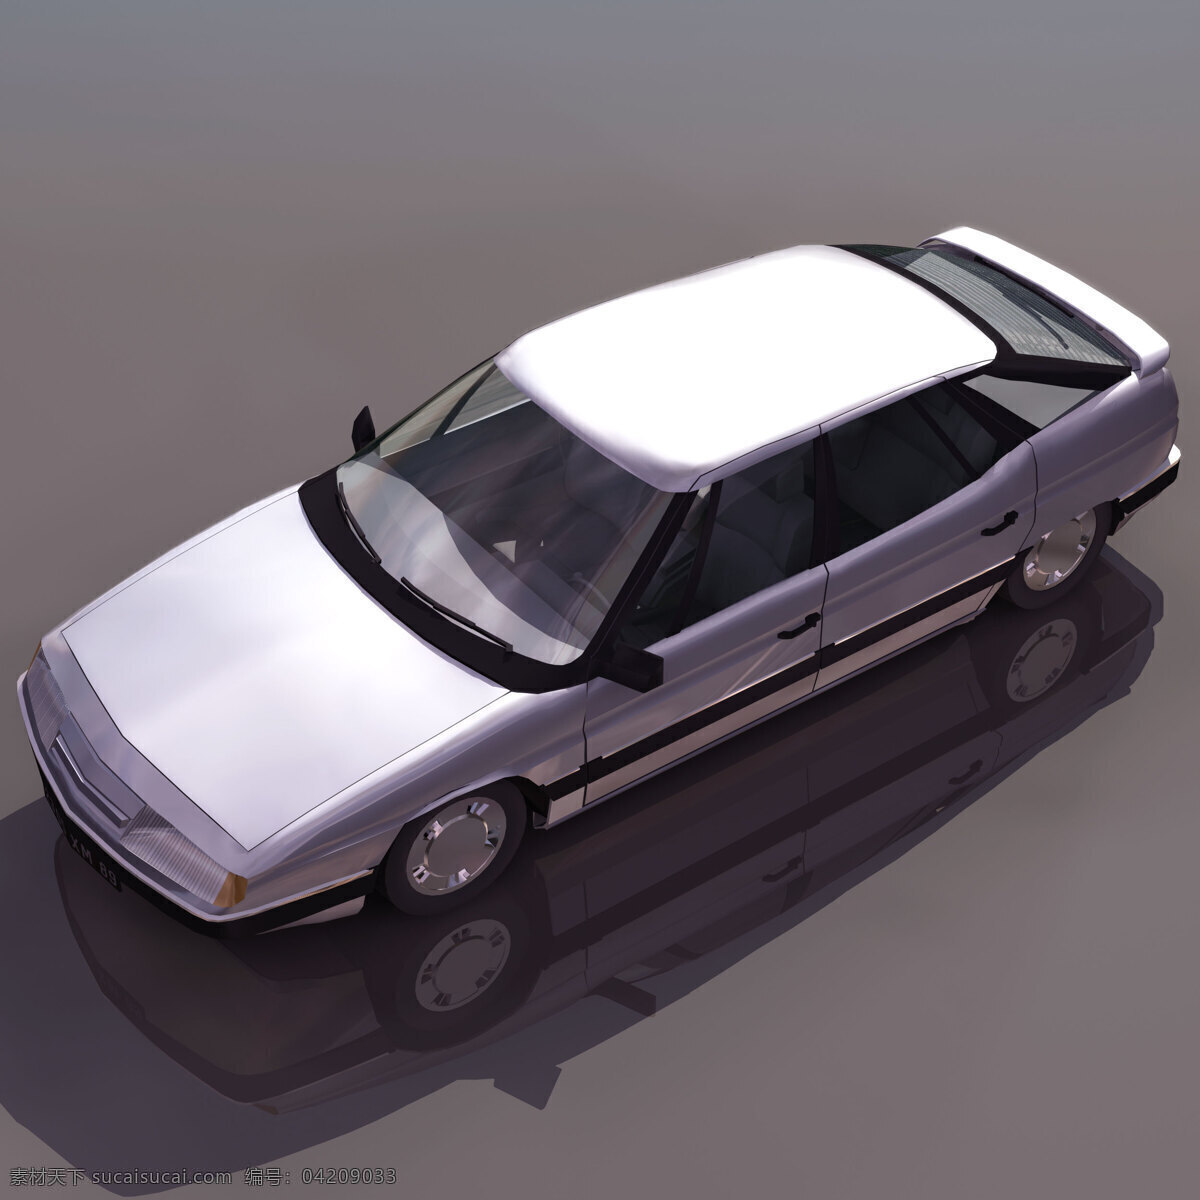 小轿车 模型 citrxm 轿车 小轿车模型 机动车辆 3d模型素材 电器模型